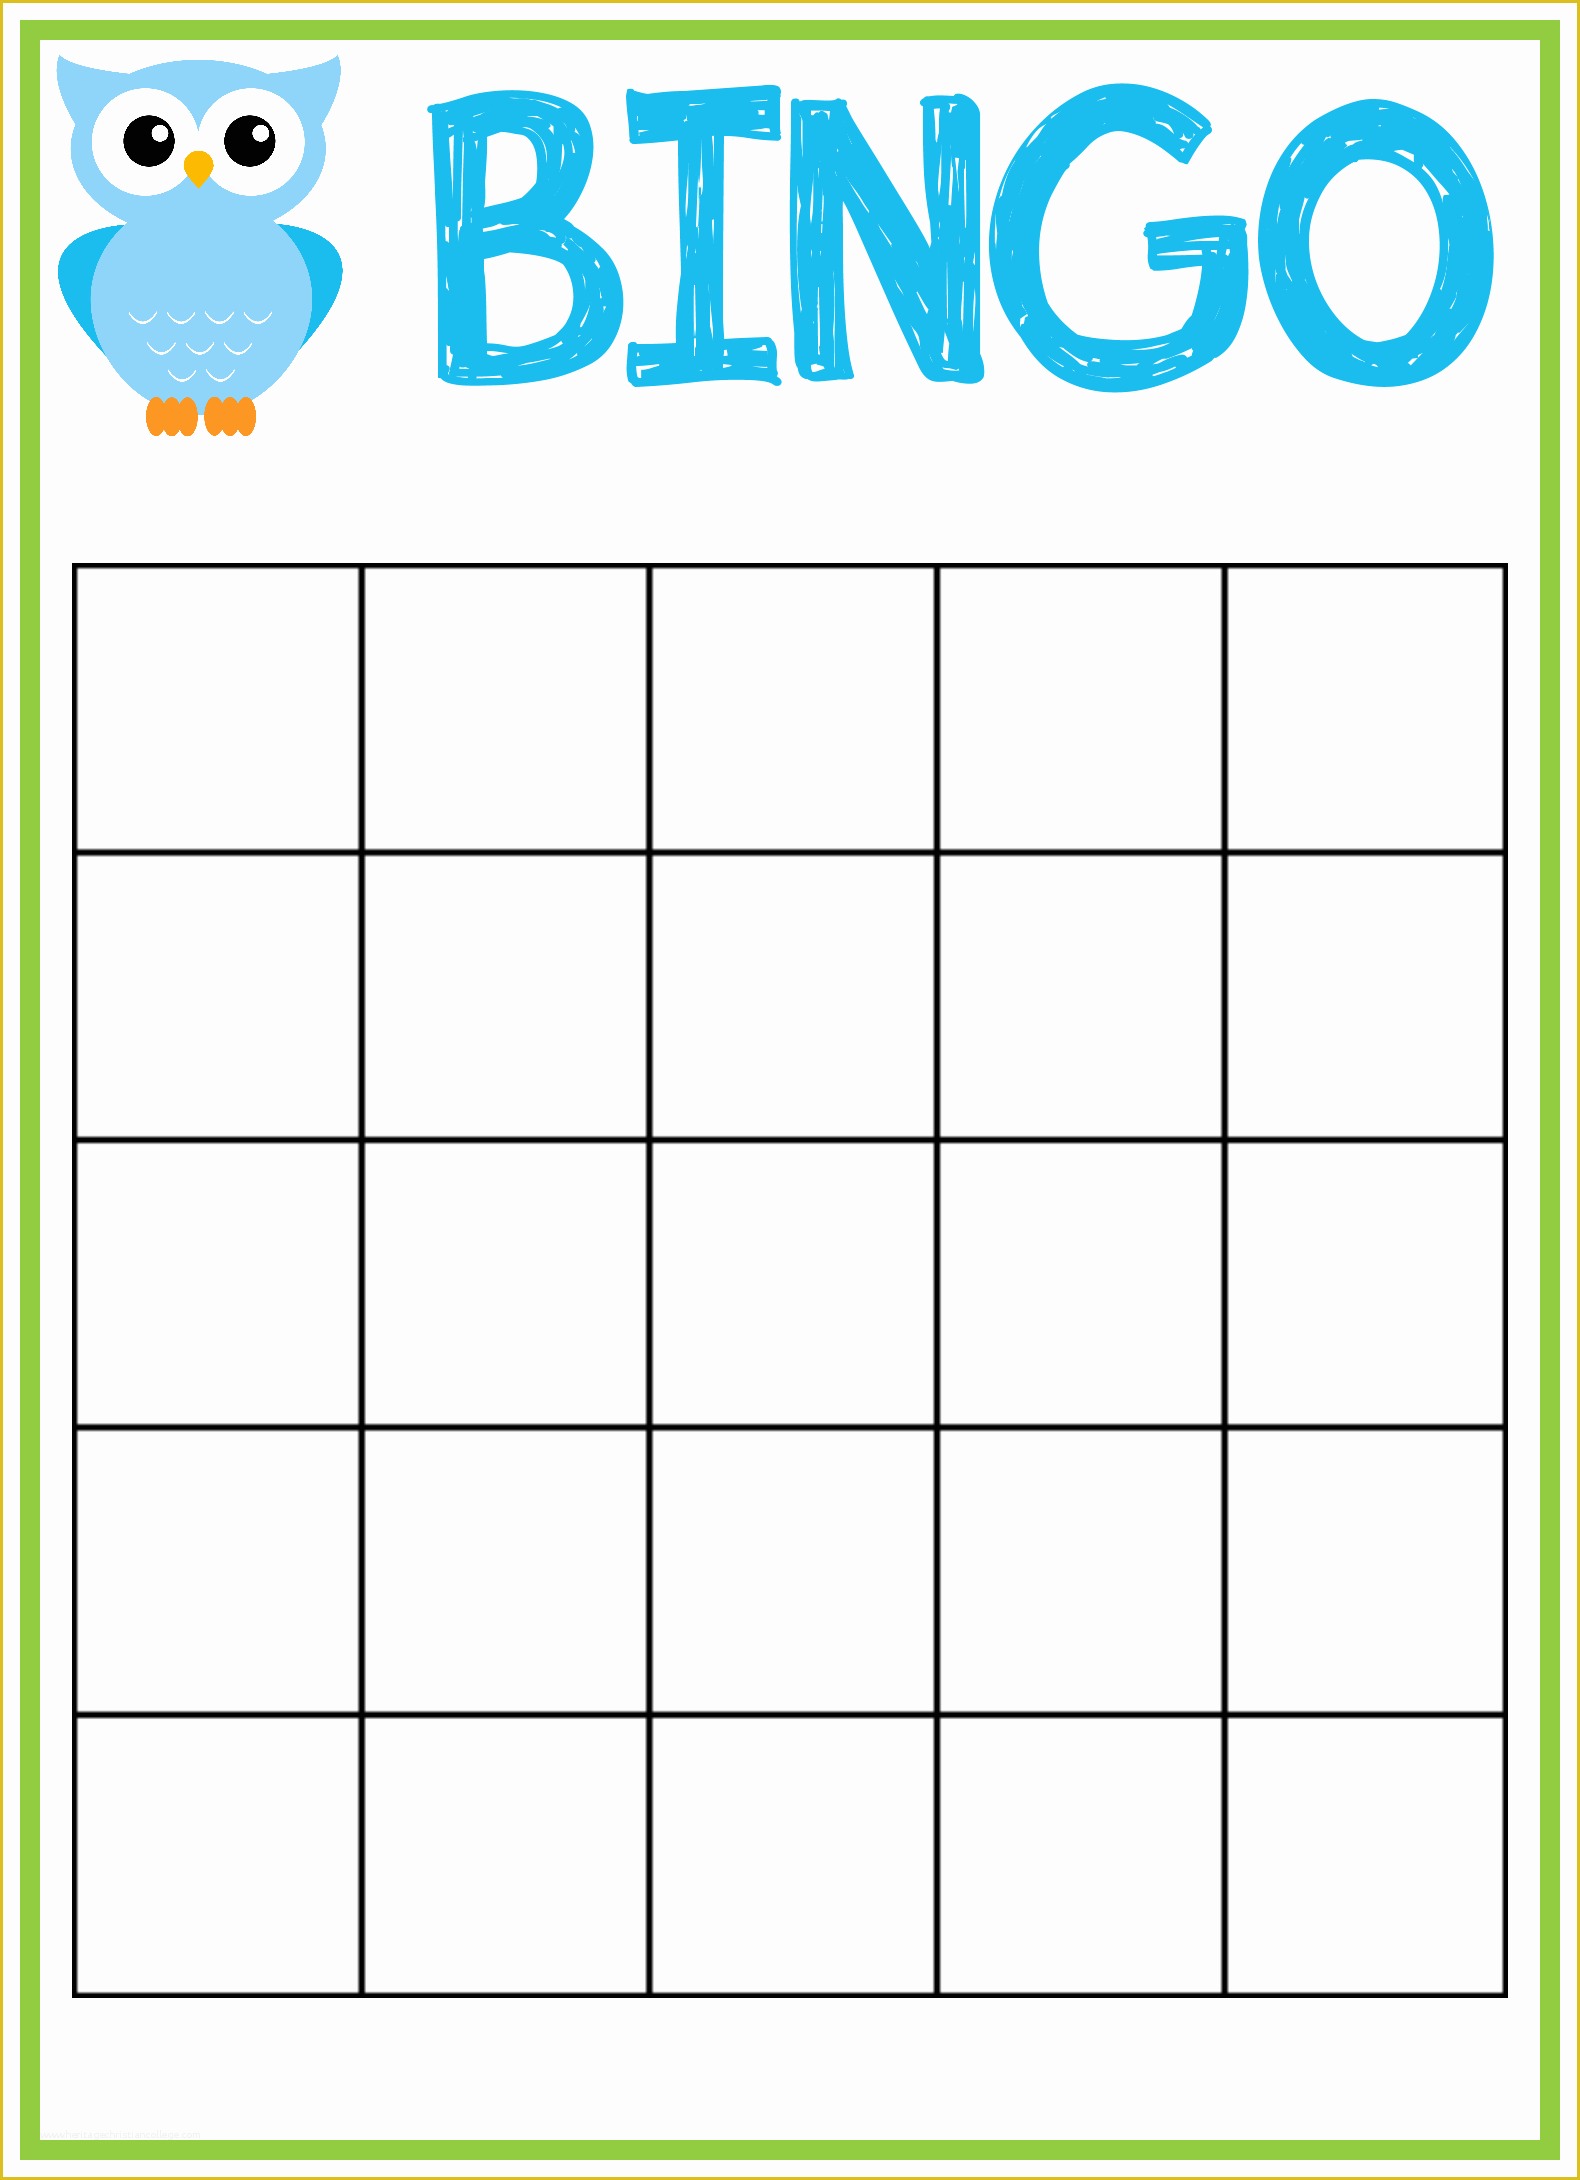 bingo-card-template-free-of-free-blank-bingo-card-template